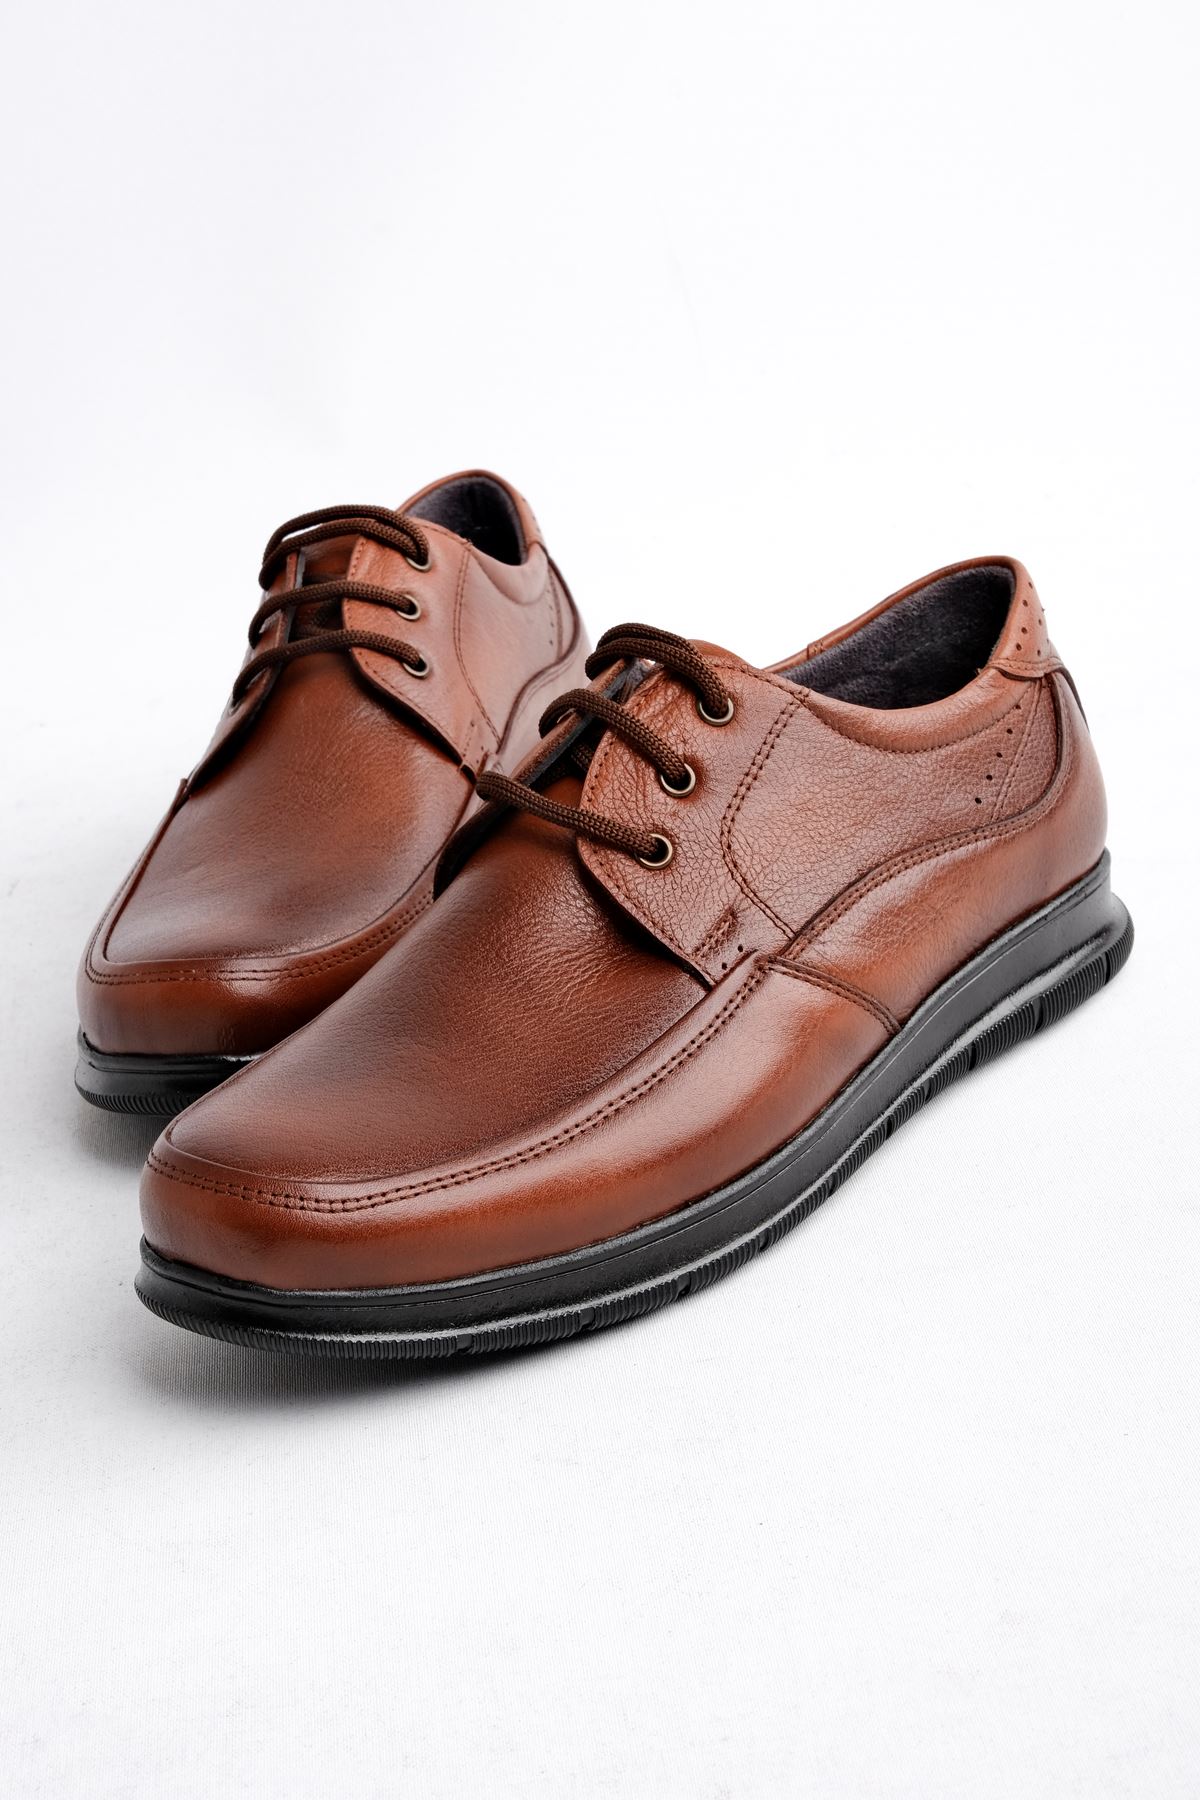 Tegan Erkek Hakiki Deri Klasik Ayakkabı-Kahverengi